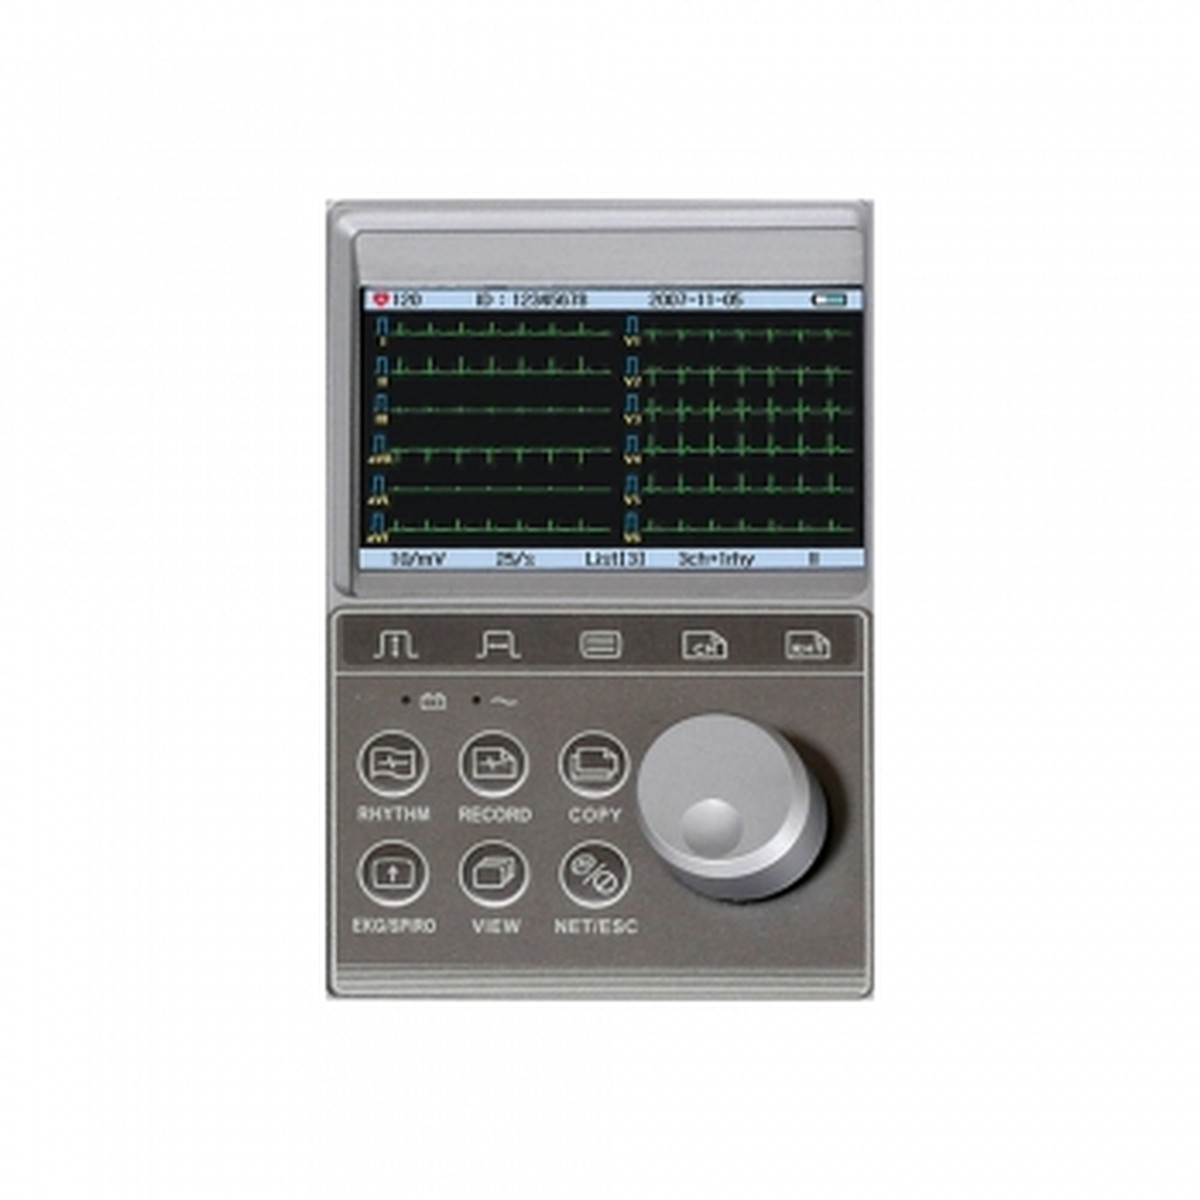 Foto do produto Eletrocardiógrafo CardioTouch 3000